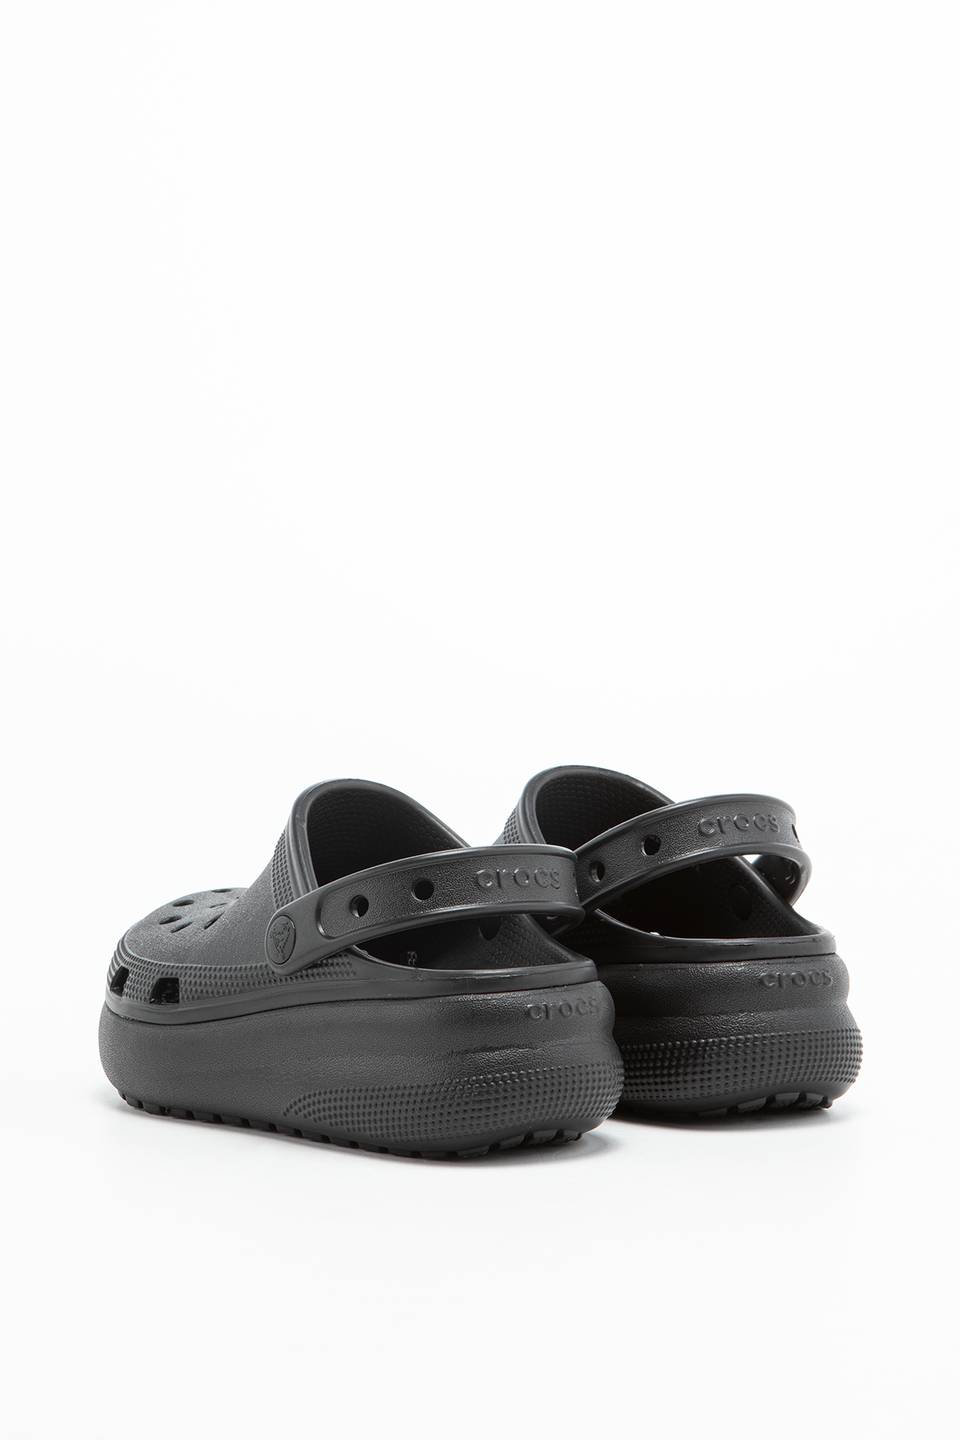 Klapki Crocs BLACK 207708-001